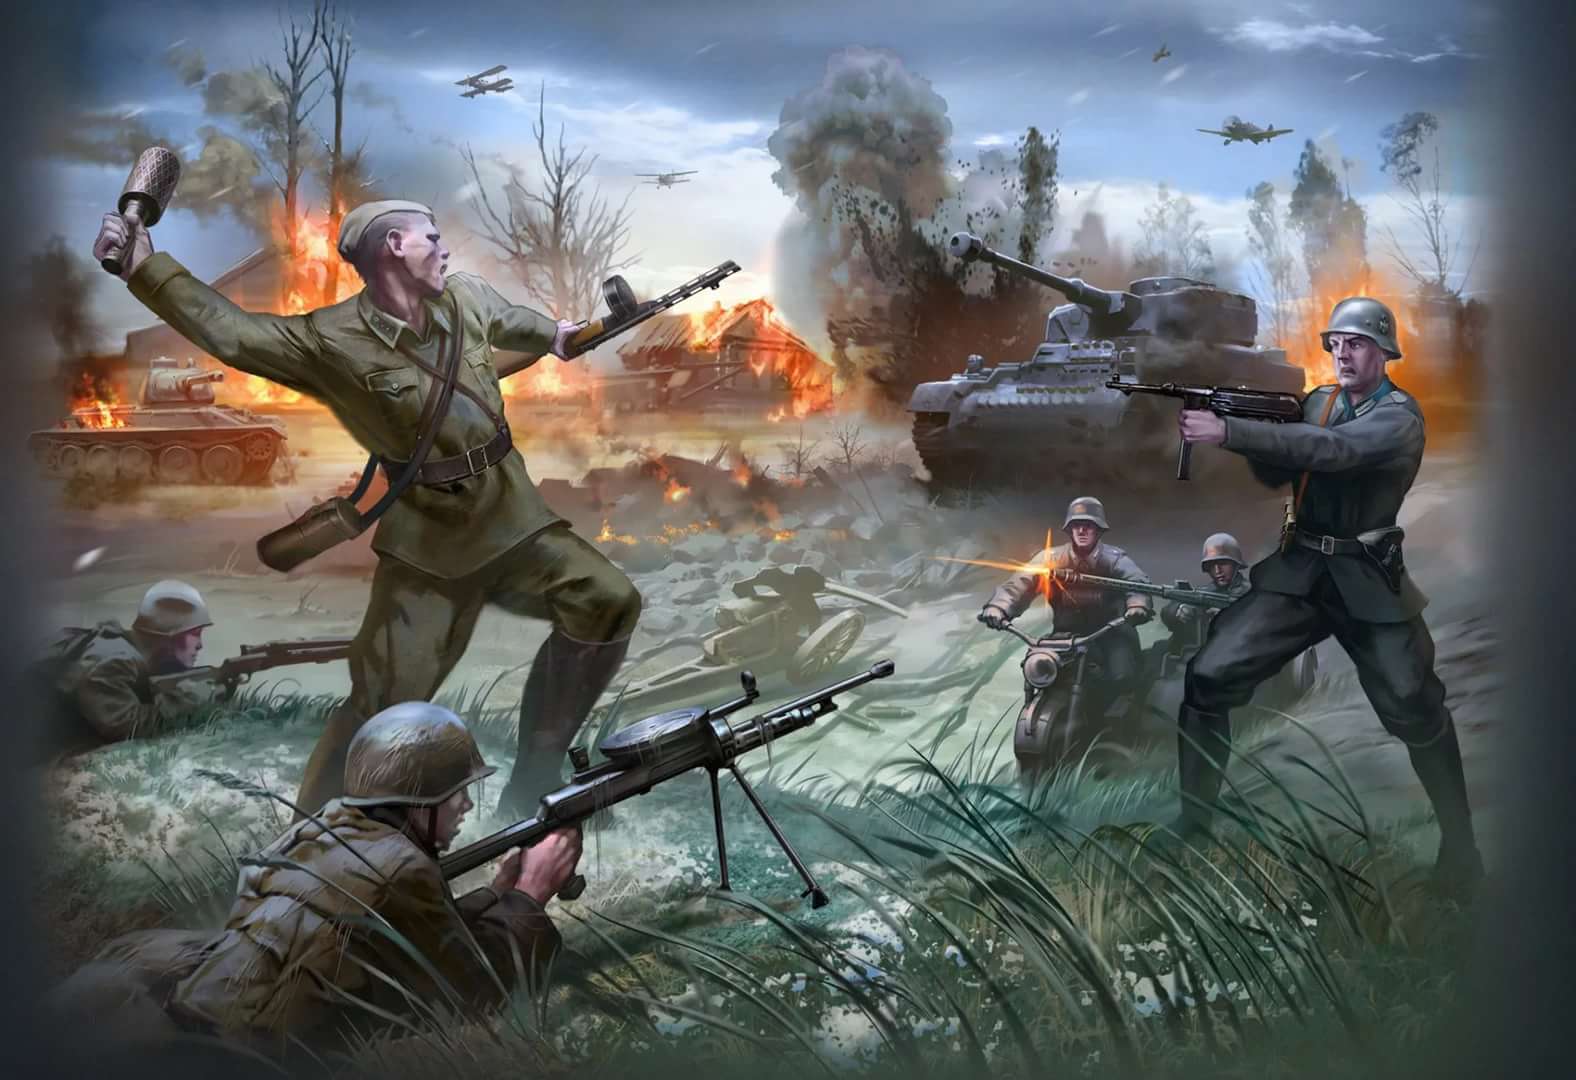 二战油画,描绘苏德战争